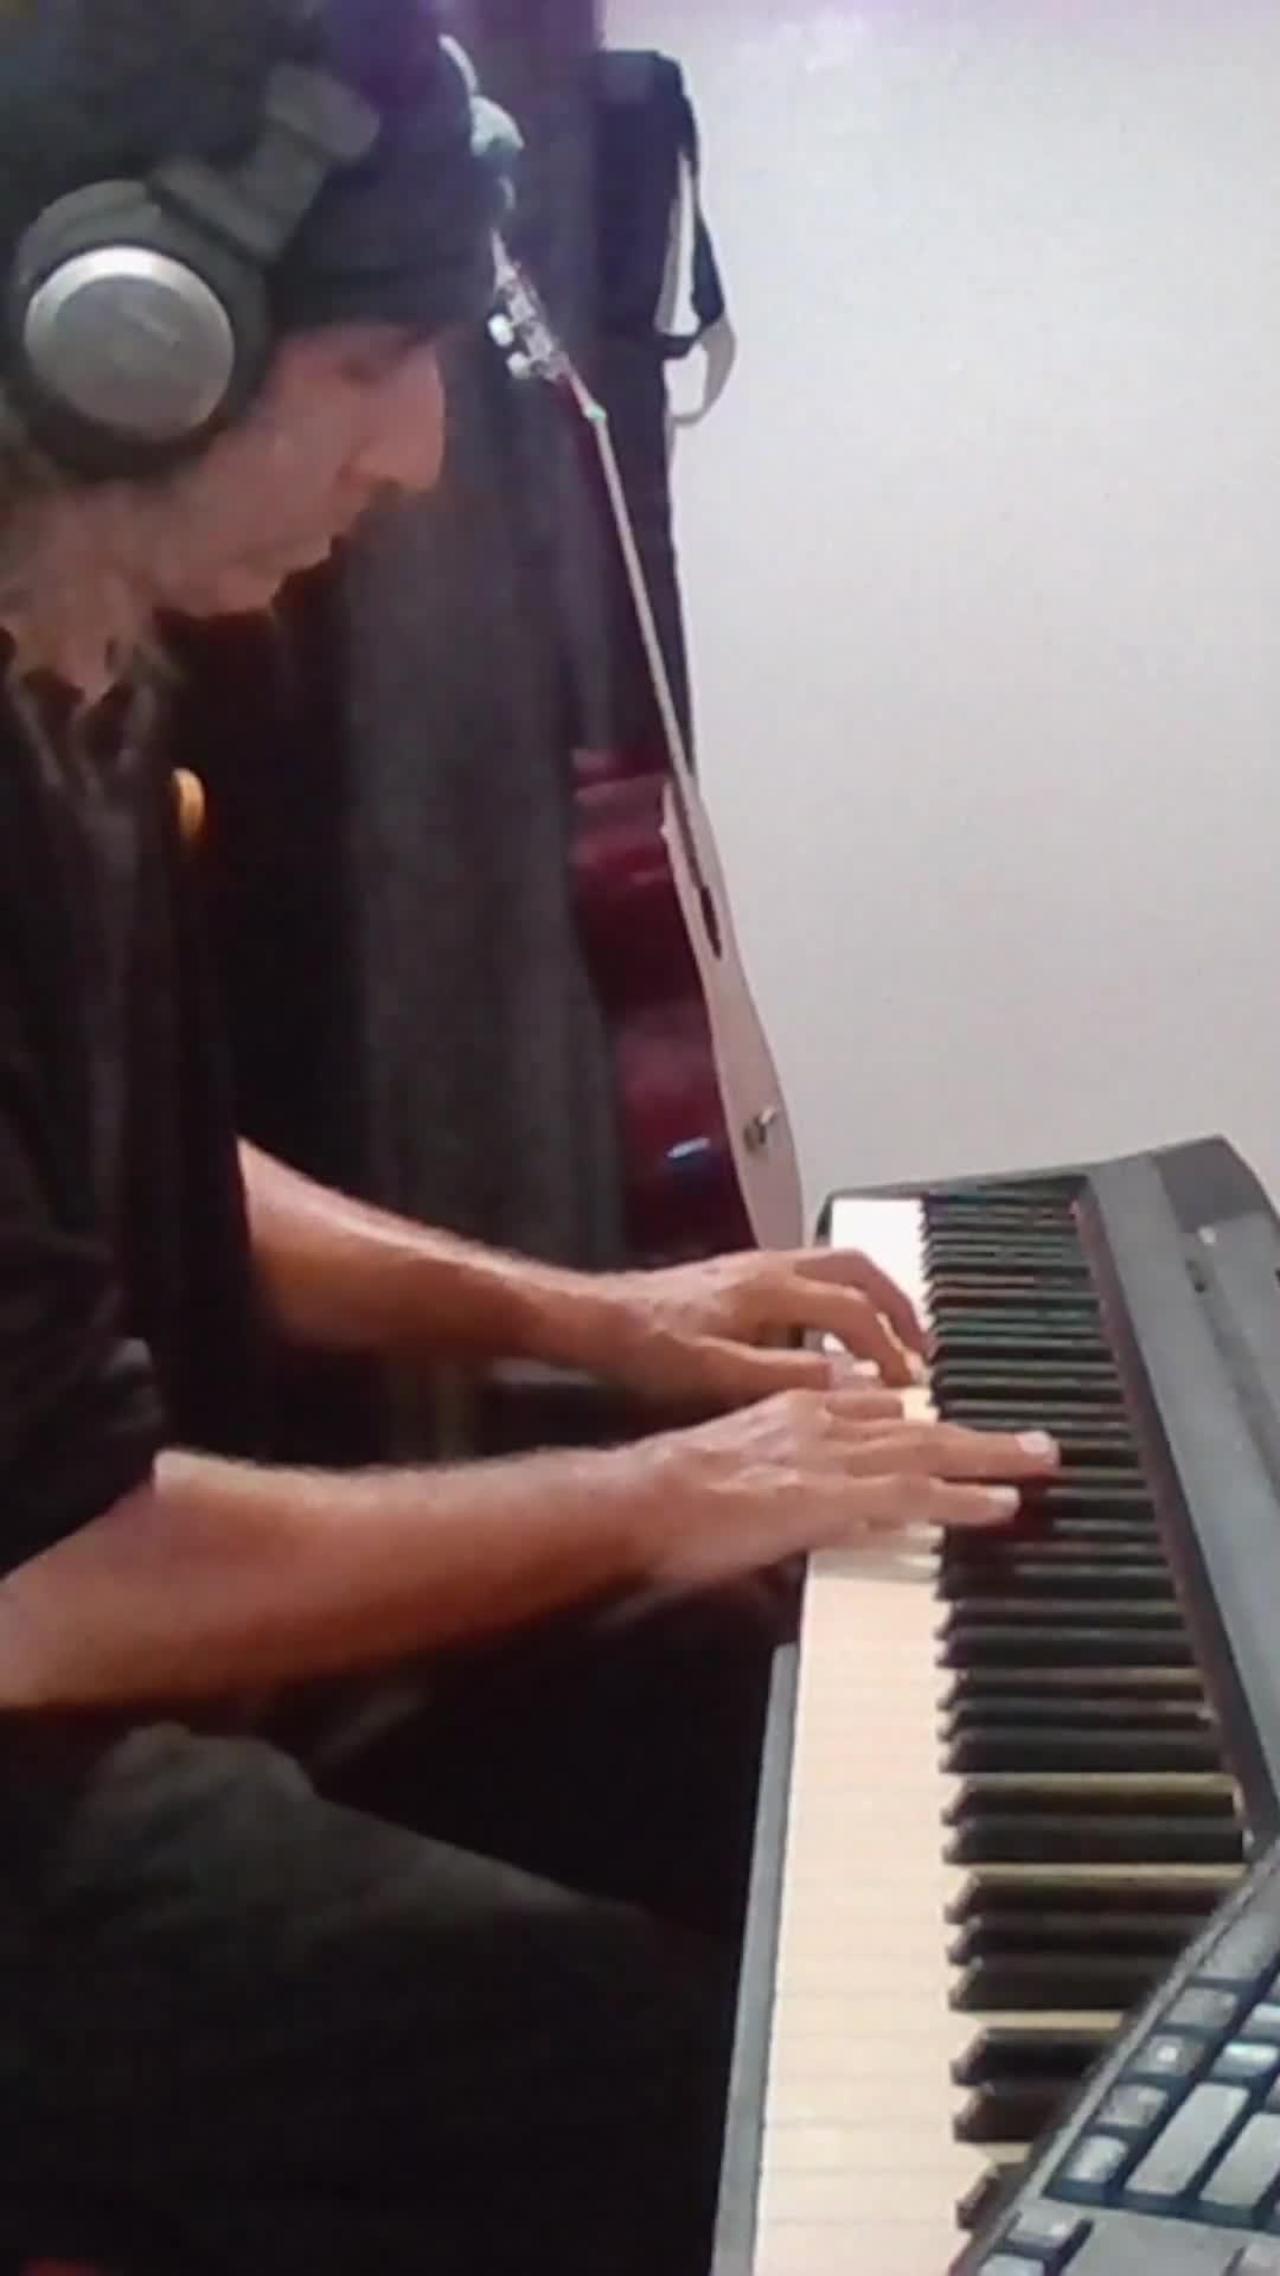 Shredding at Proxima b Short - original piano music